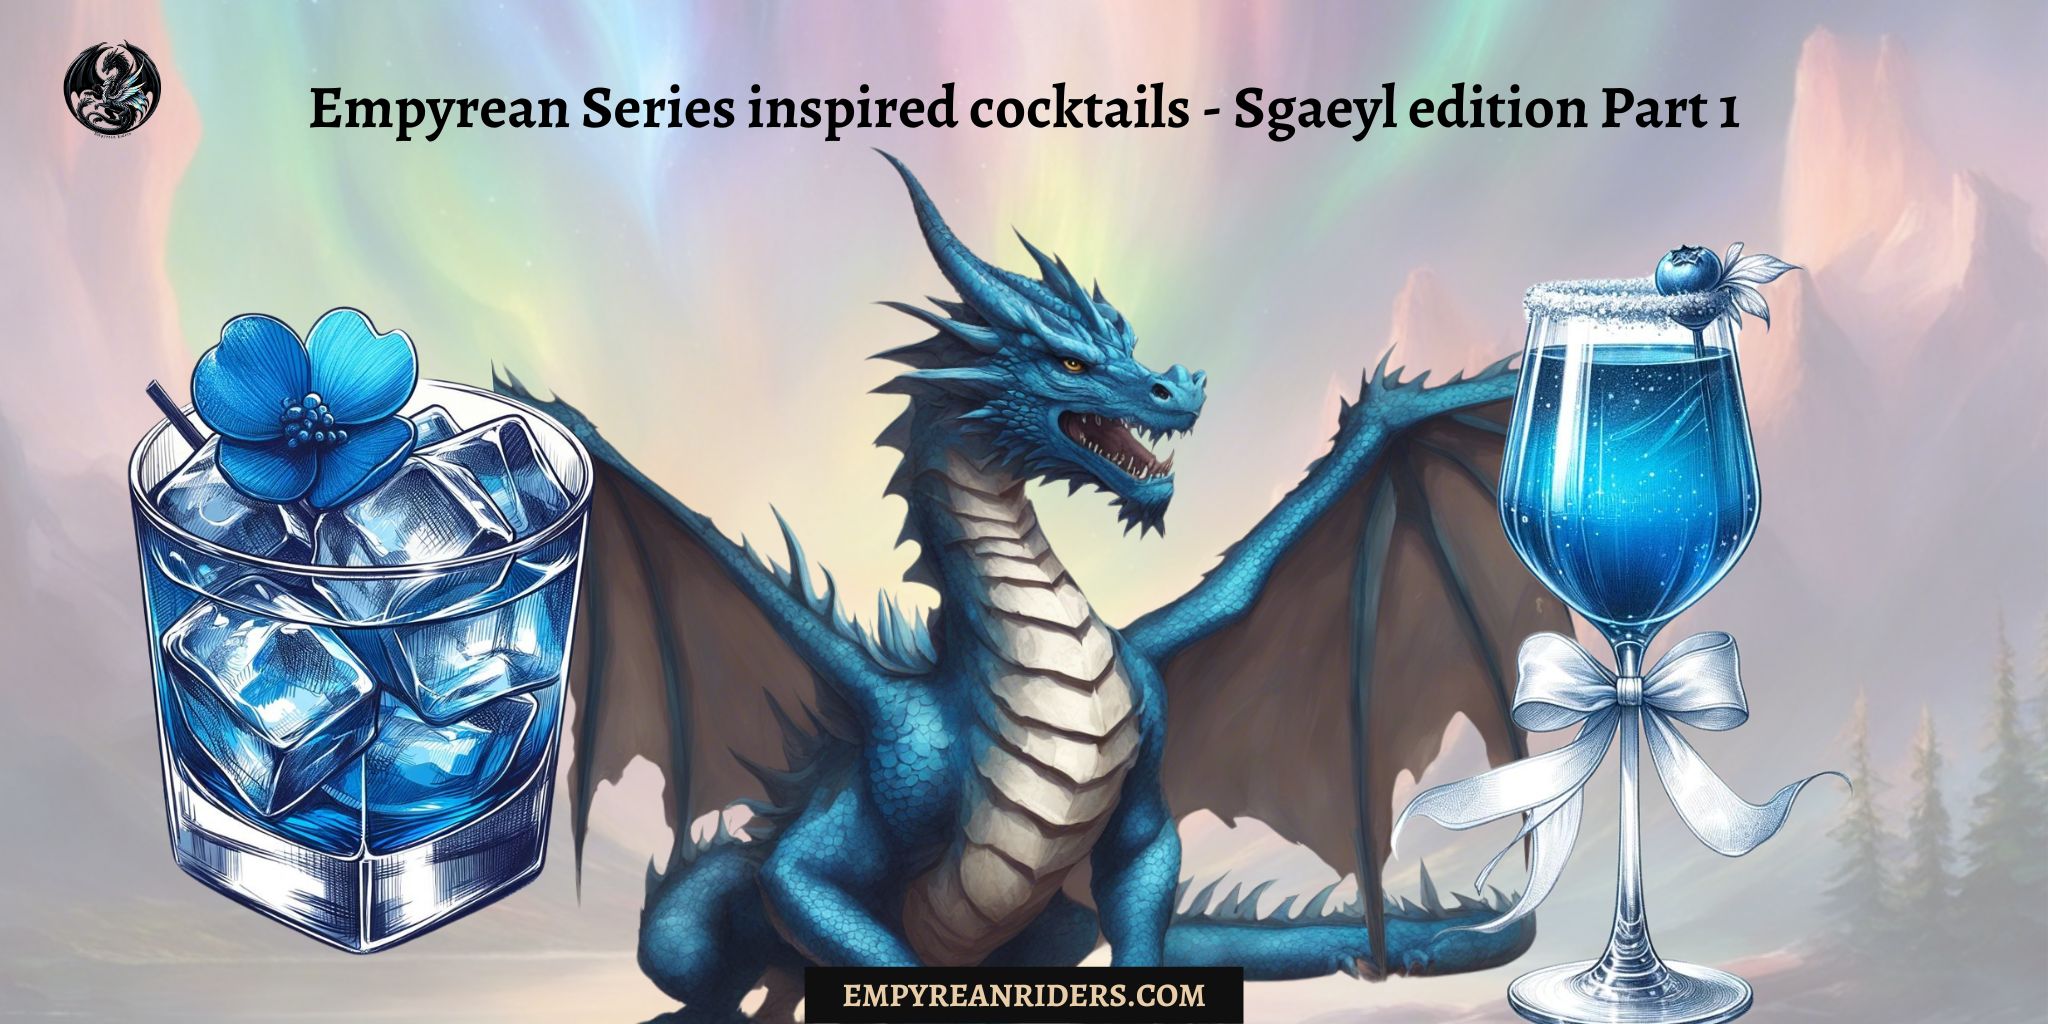 Empyrean Series cocktaul - Sgaeyl edition Part 1